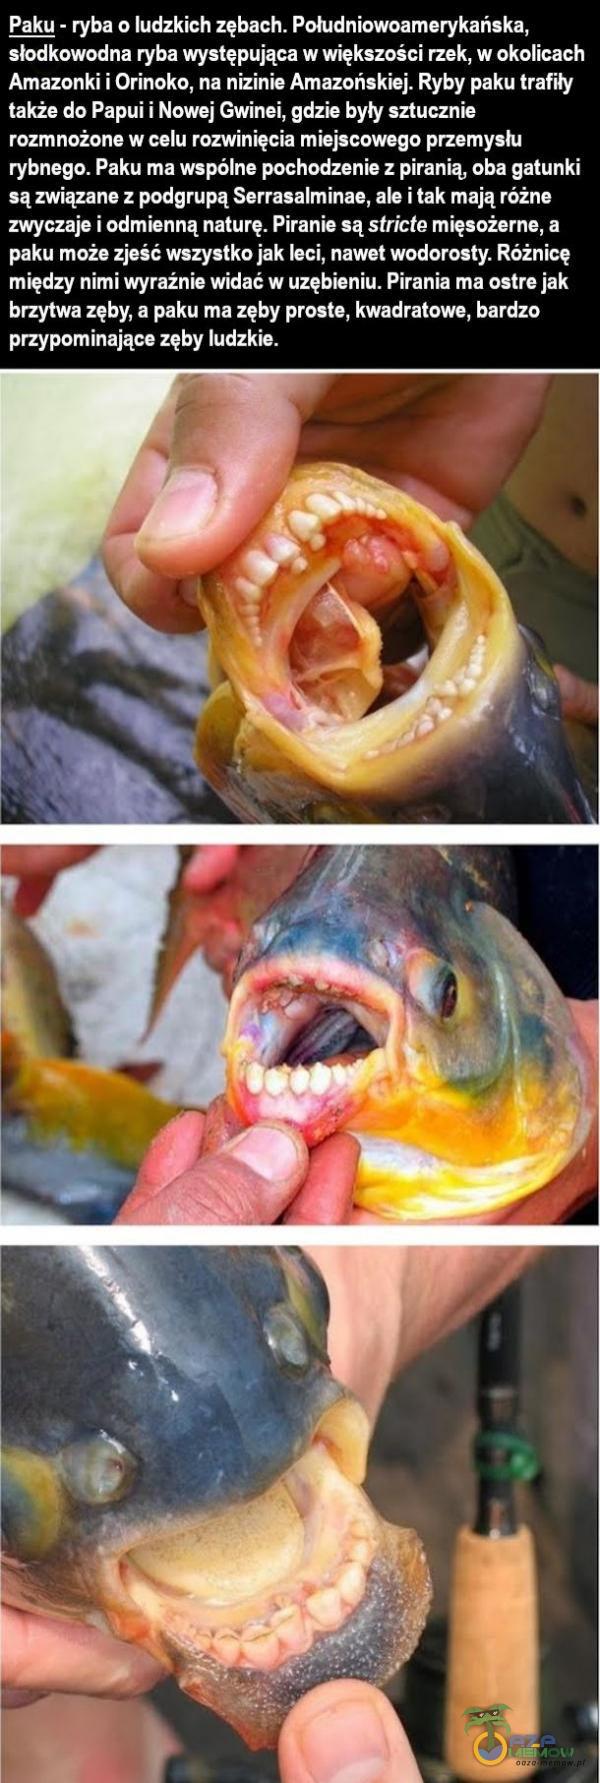   Paku - ryba o ludzkich zębach. Południowoamerykańska, słodkowodna ryba występująca w większości rzek, w okolicach Amazonki i Orinoko, na nizinie Amazońskiej. Ryby paku trafiły także do Papui i Nowej Gwinei, gdzie byty sztucznie...